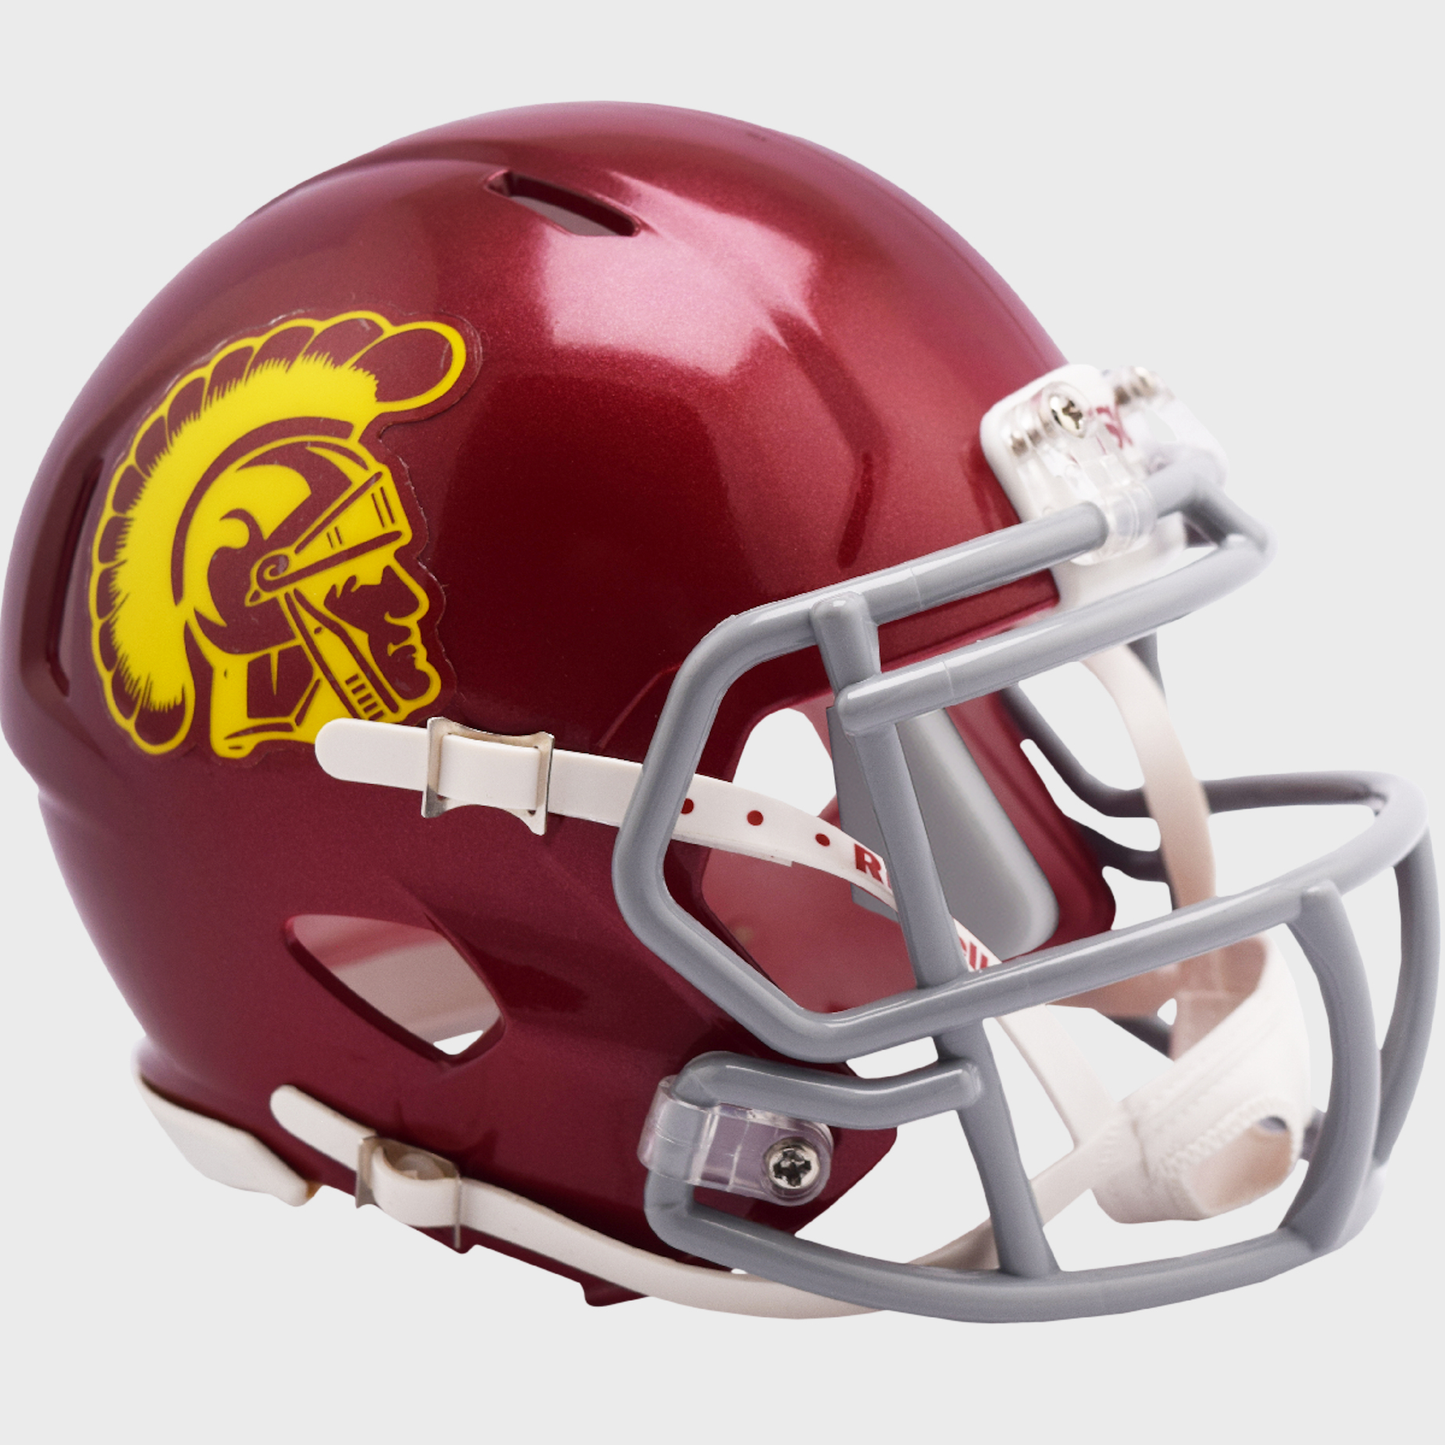 USC Trojans mini helmet